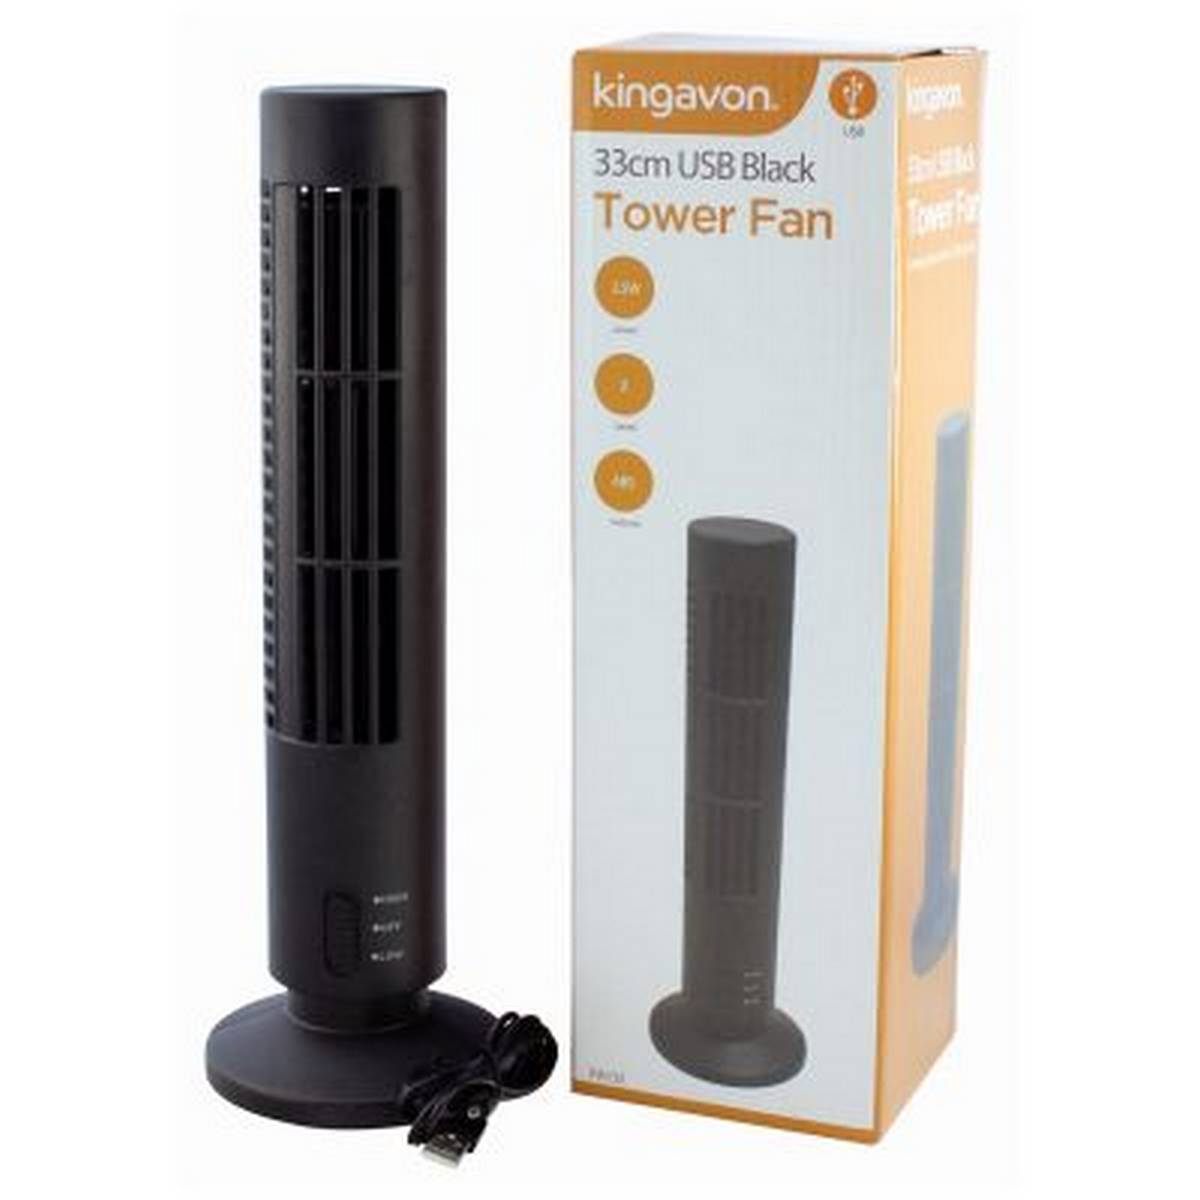 KINGAVON USB TOWER FAN - BLACK BB-FA131